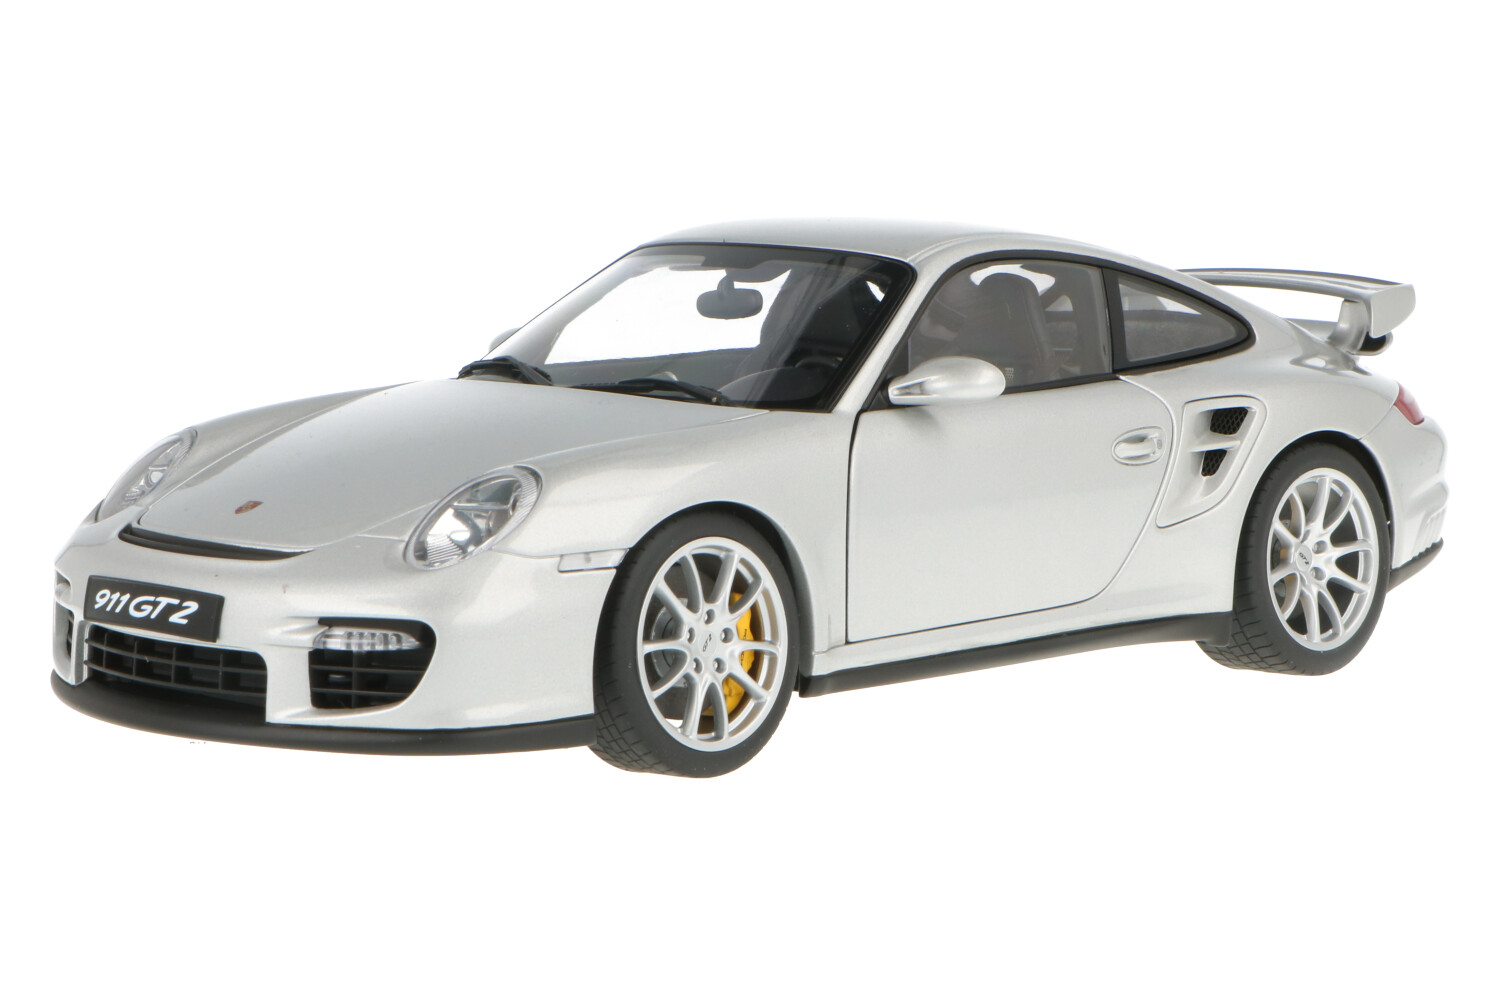 Porsche-911-GT2-77898_1315674110778984Porsche-911-GT2-77898_Houseofmodelcars_.jpg